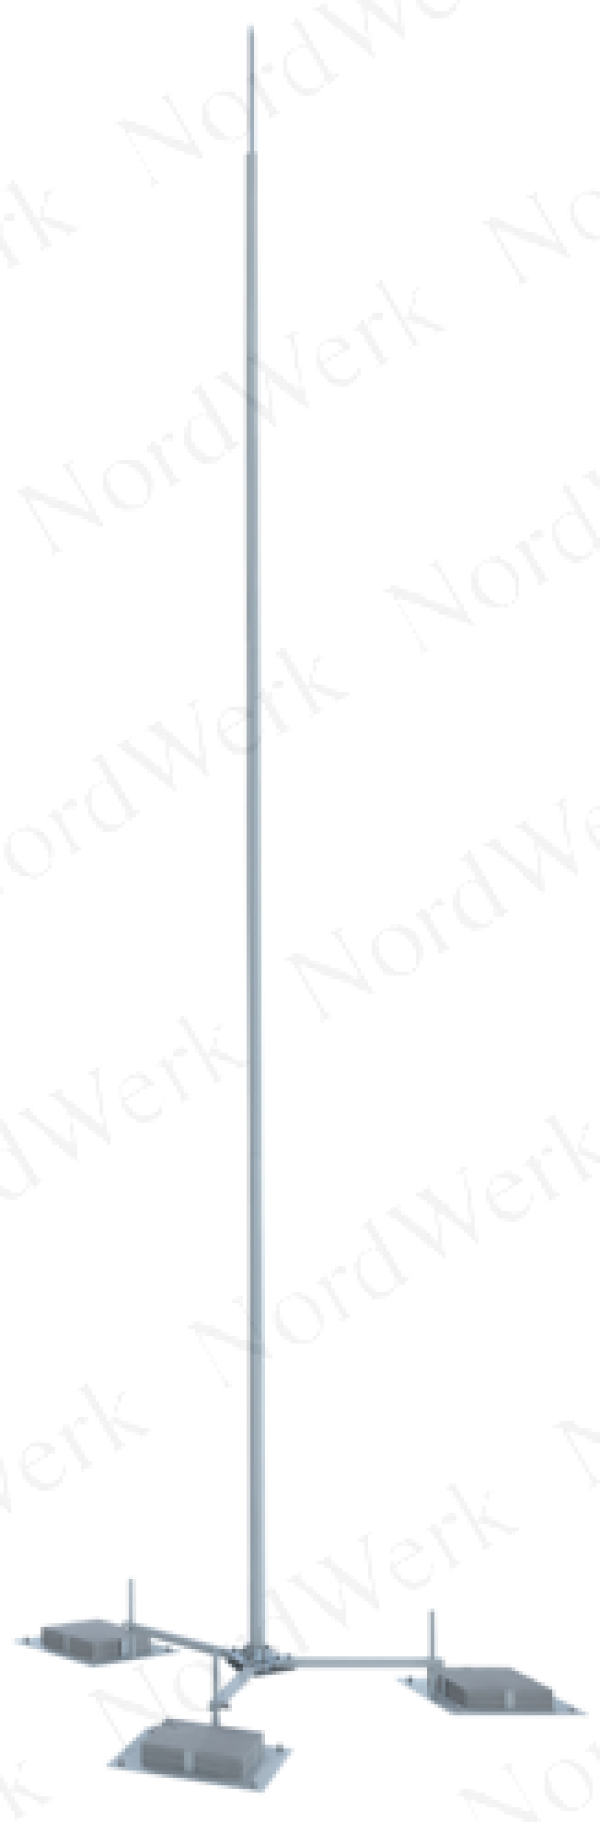 NordWerk МСАА-М-5,4-Т – Молниеотвод высотой 5,4 метров для активных молниеприемников (алюминий; с треногой)